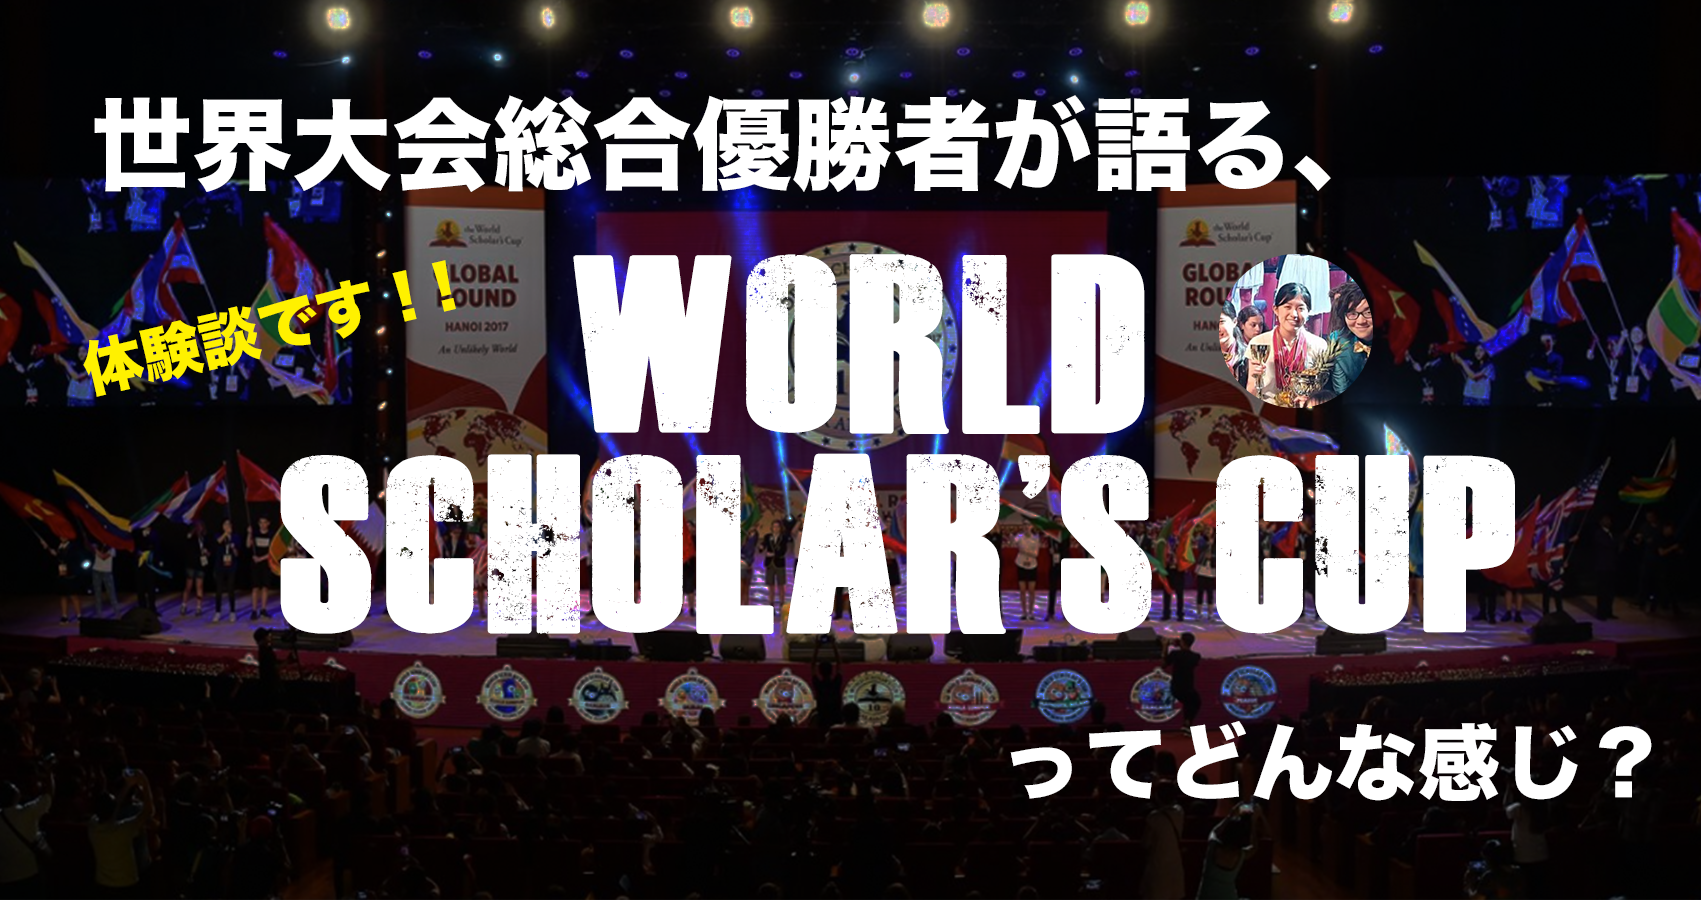 【サイト独占寄稿】世界大会総合優勝者が語る「World Scholar’s Cup」